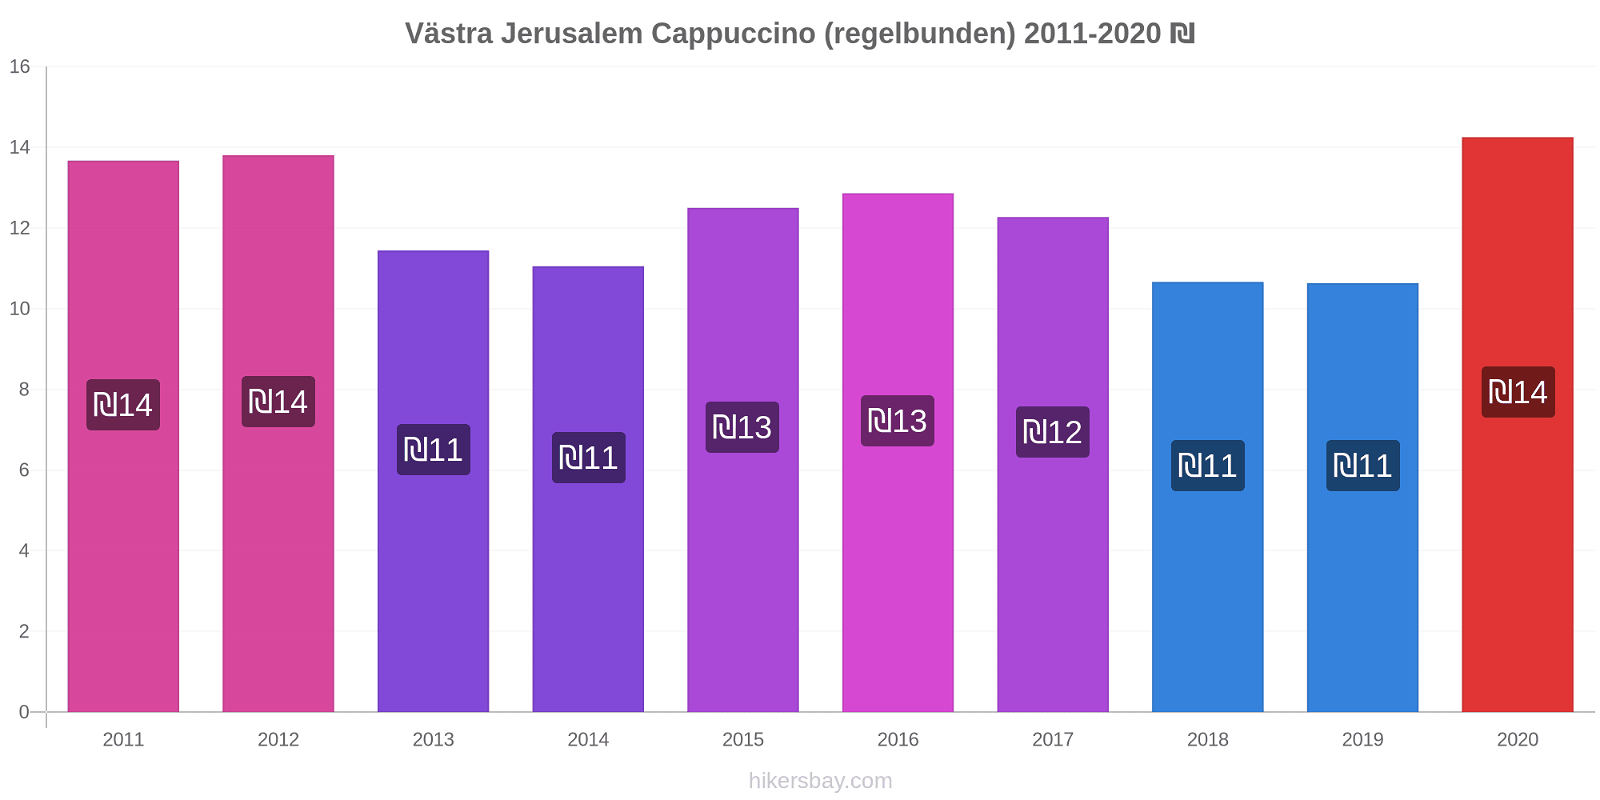 Västra Jerusalem prisförändringar Cappuccino (regelbunden) hikersbay.com